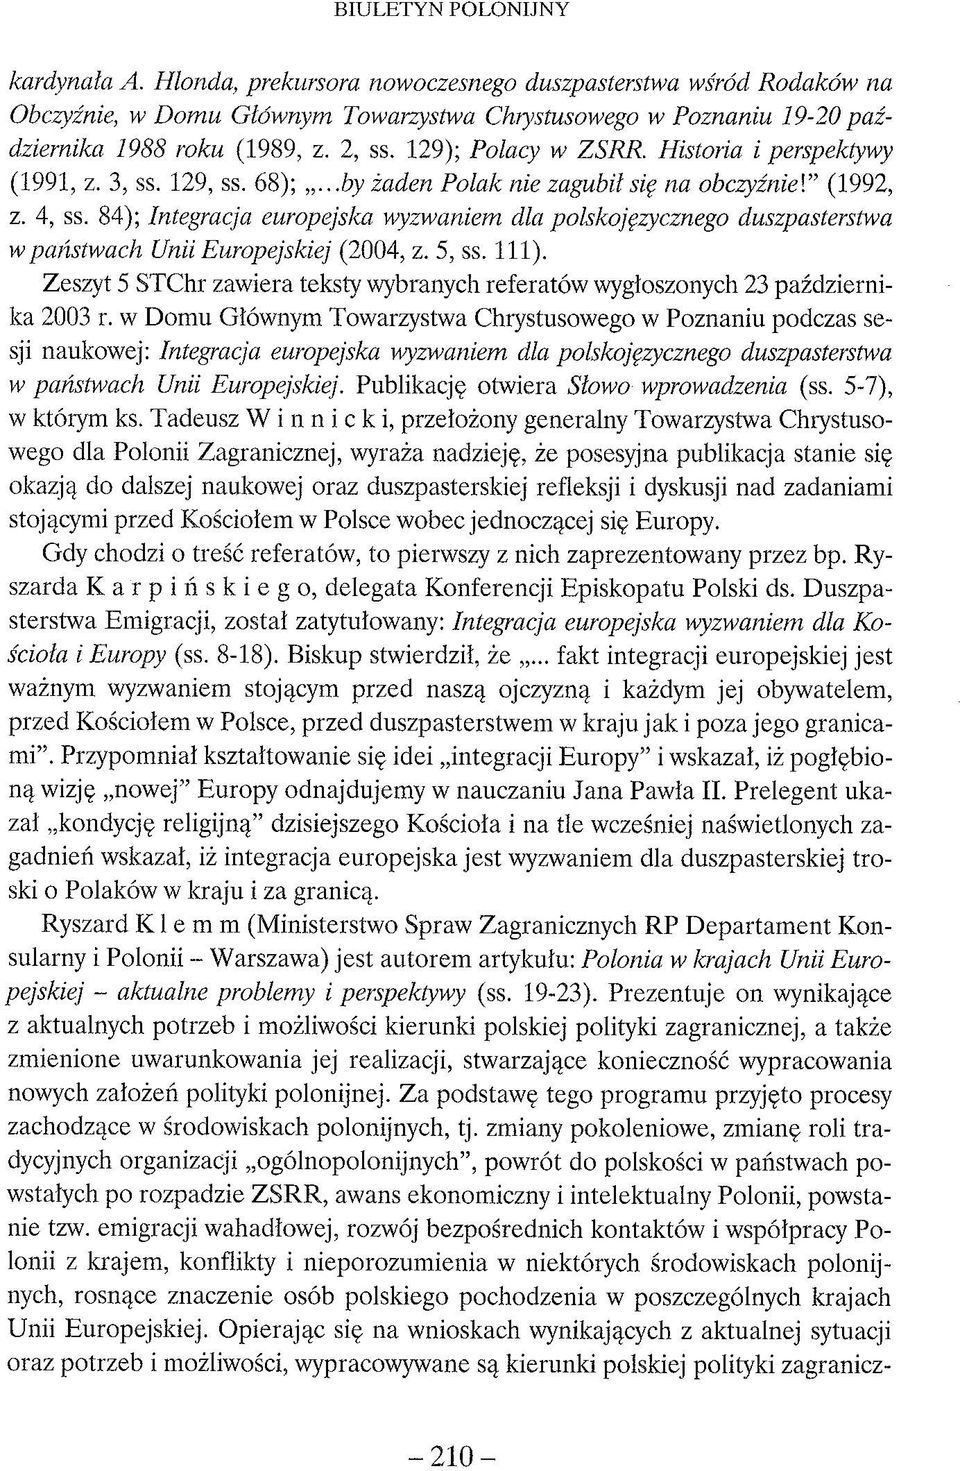 84); Integracja europejska wyzwaniem dla polskojęzycznego duszpasterstwa w państwach Unii Europejskiej (2004, z. 5, ss. 111).